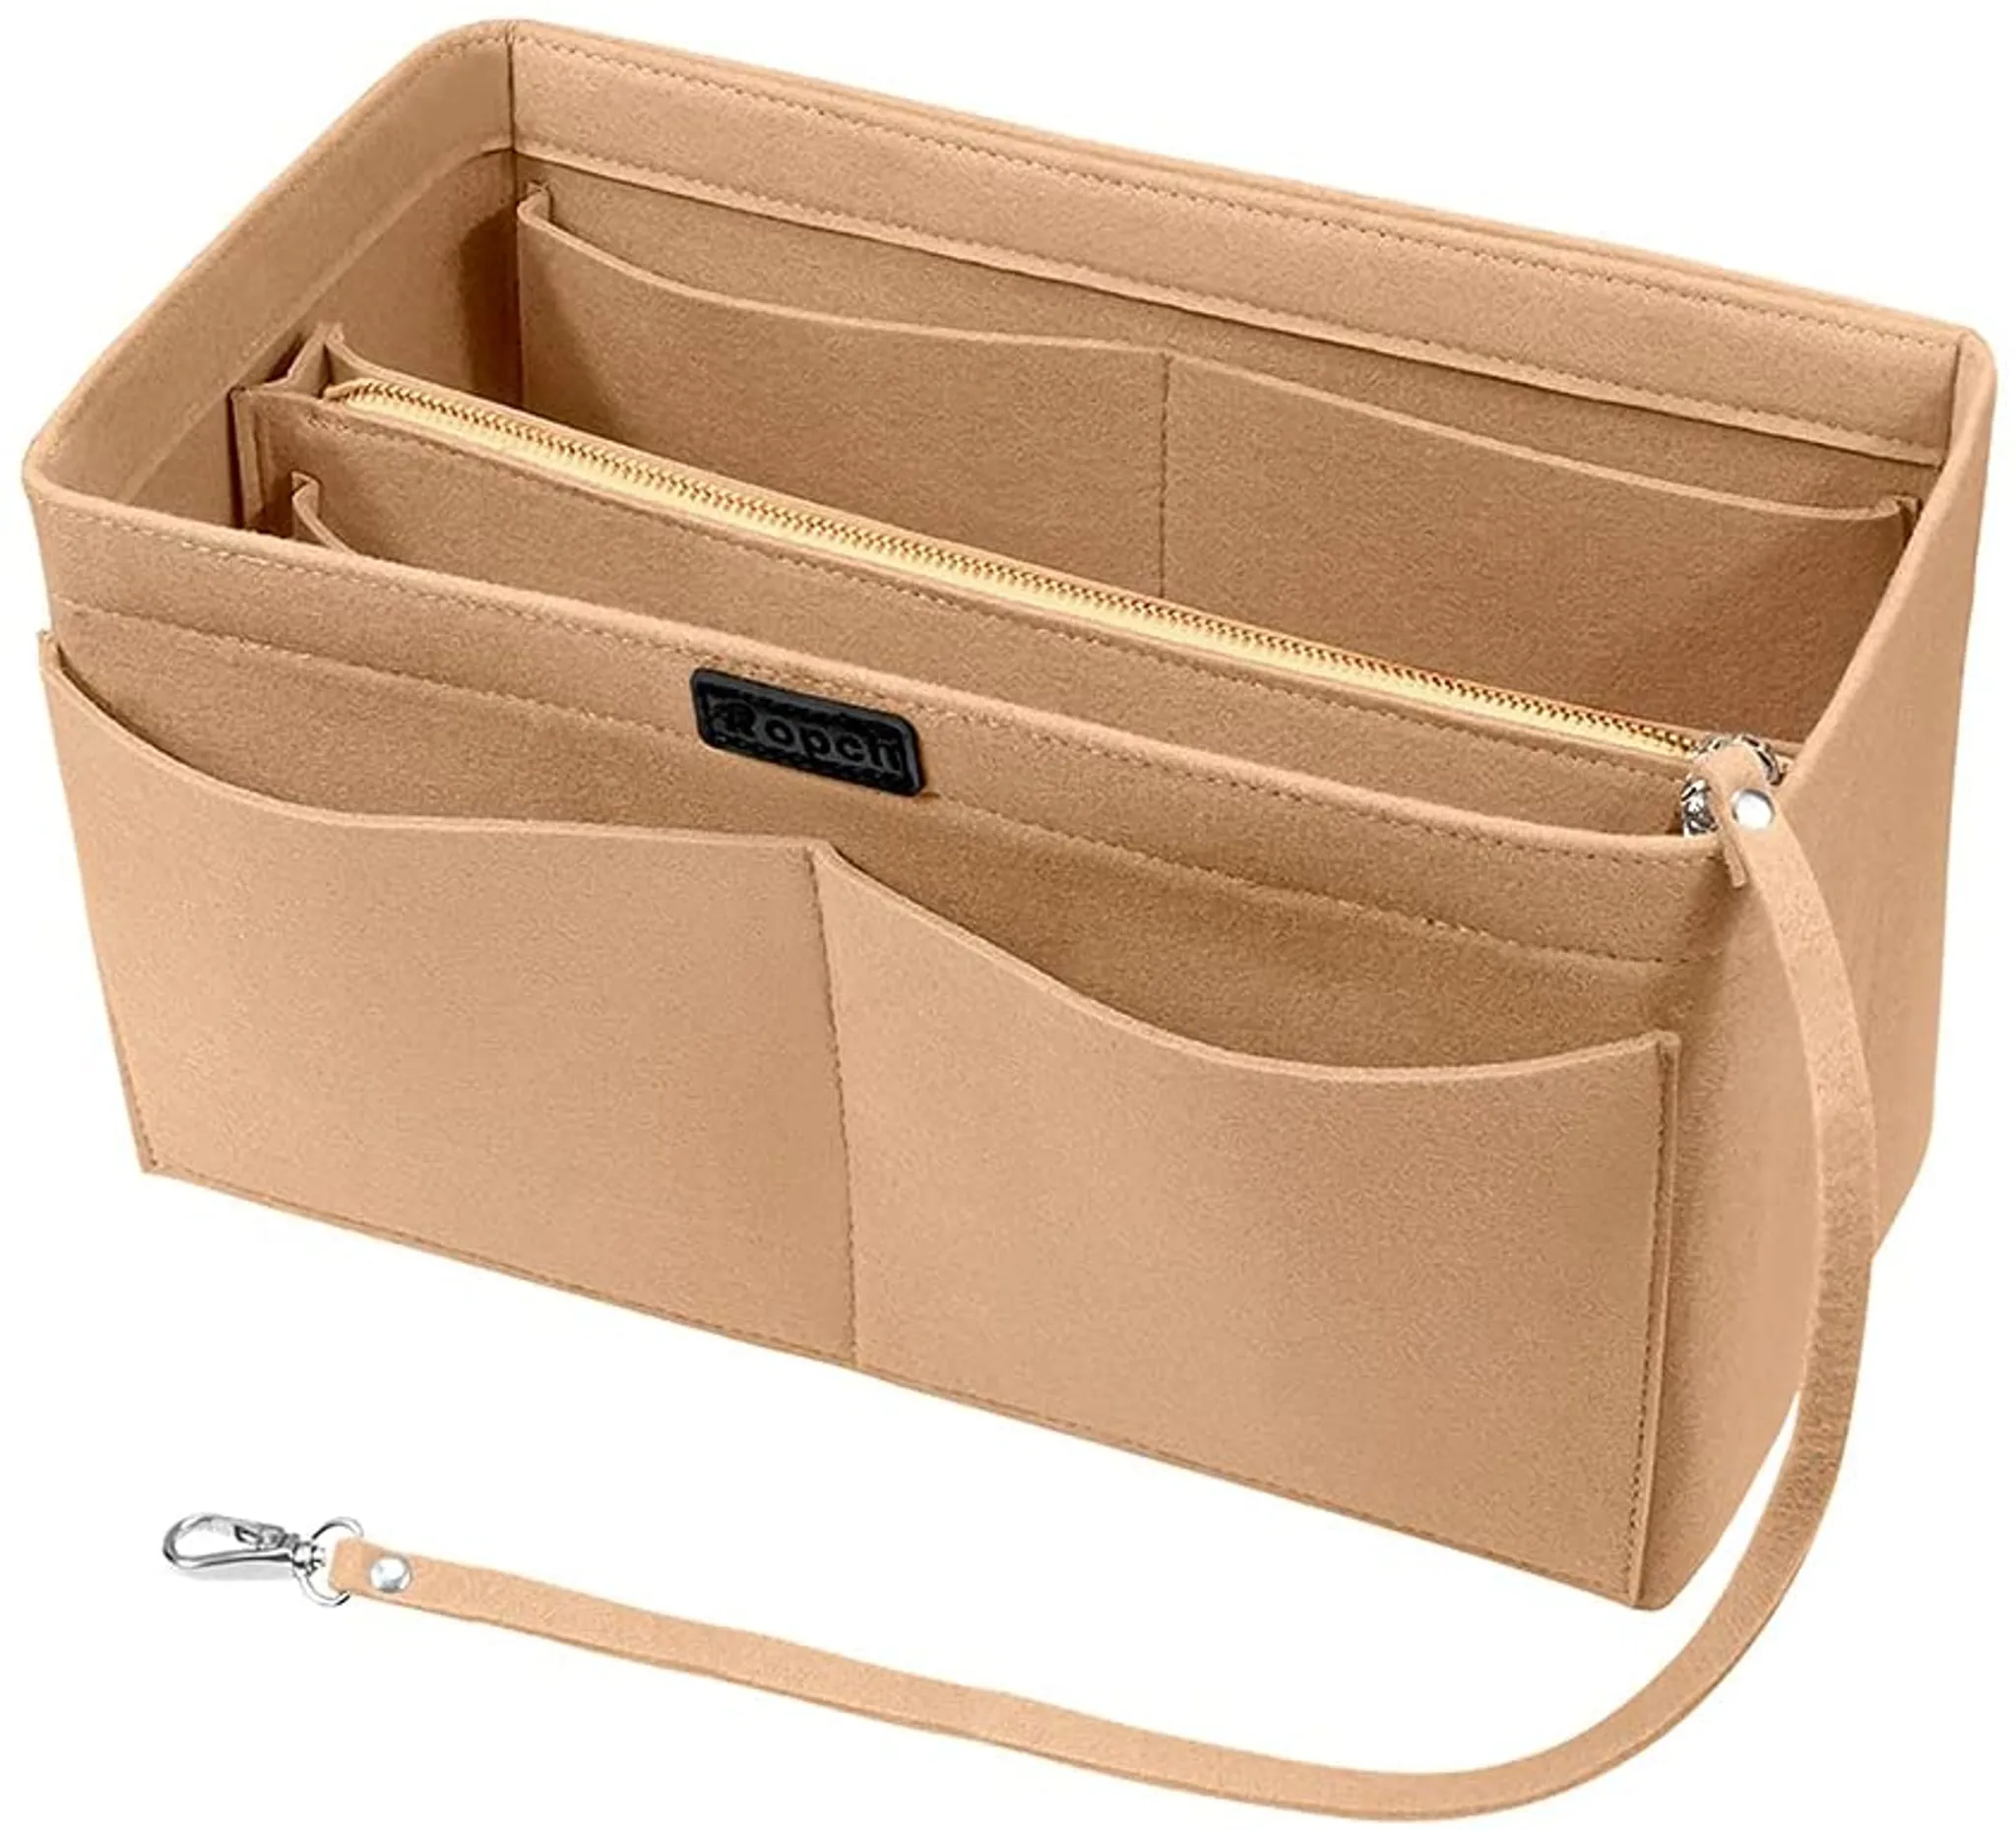 Filz Organizer für Handtasche Einsatz Innentasche Taschenorganizer  Ordnungsbox